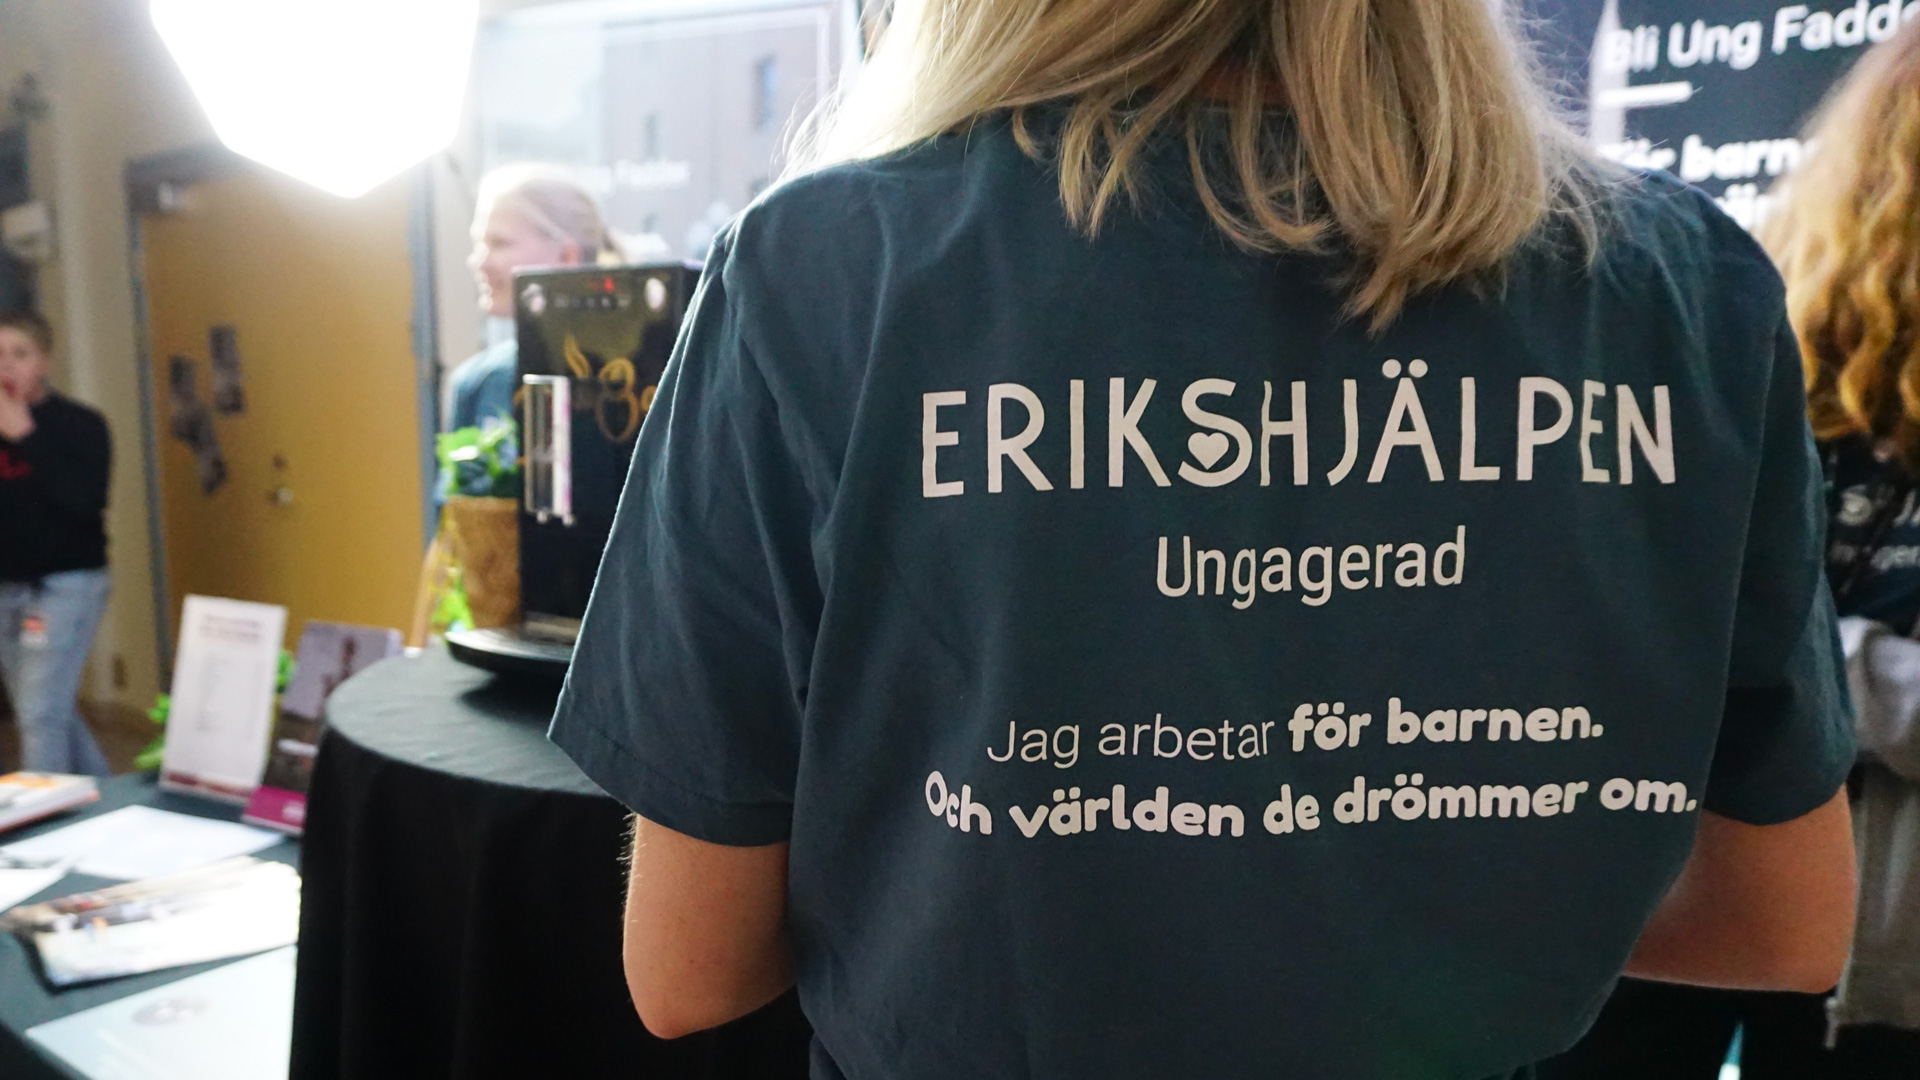 En värvare visar baksidan av t-shirt med Erikshjälpen Ungagerad logotyp på.